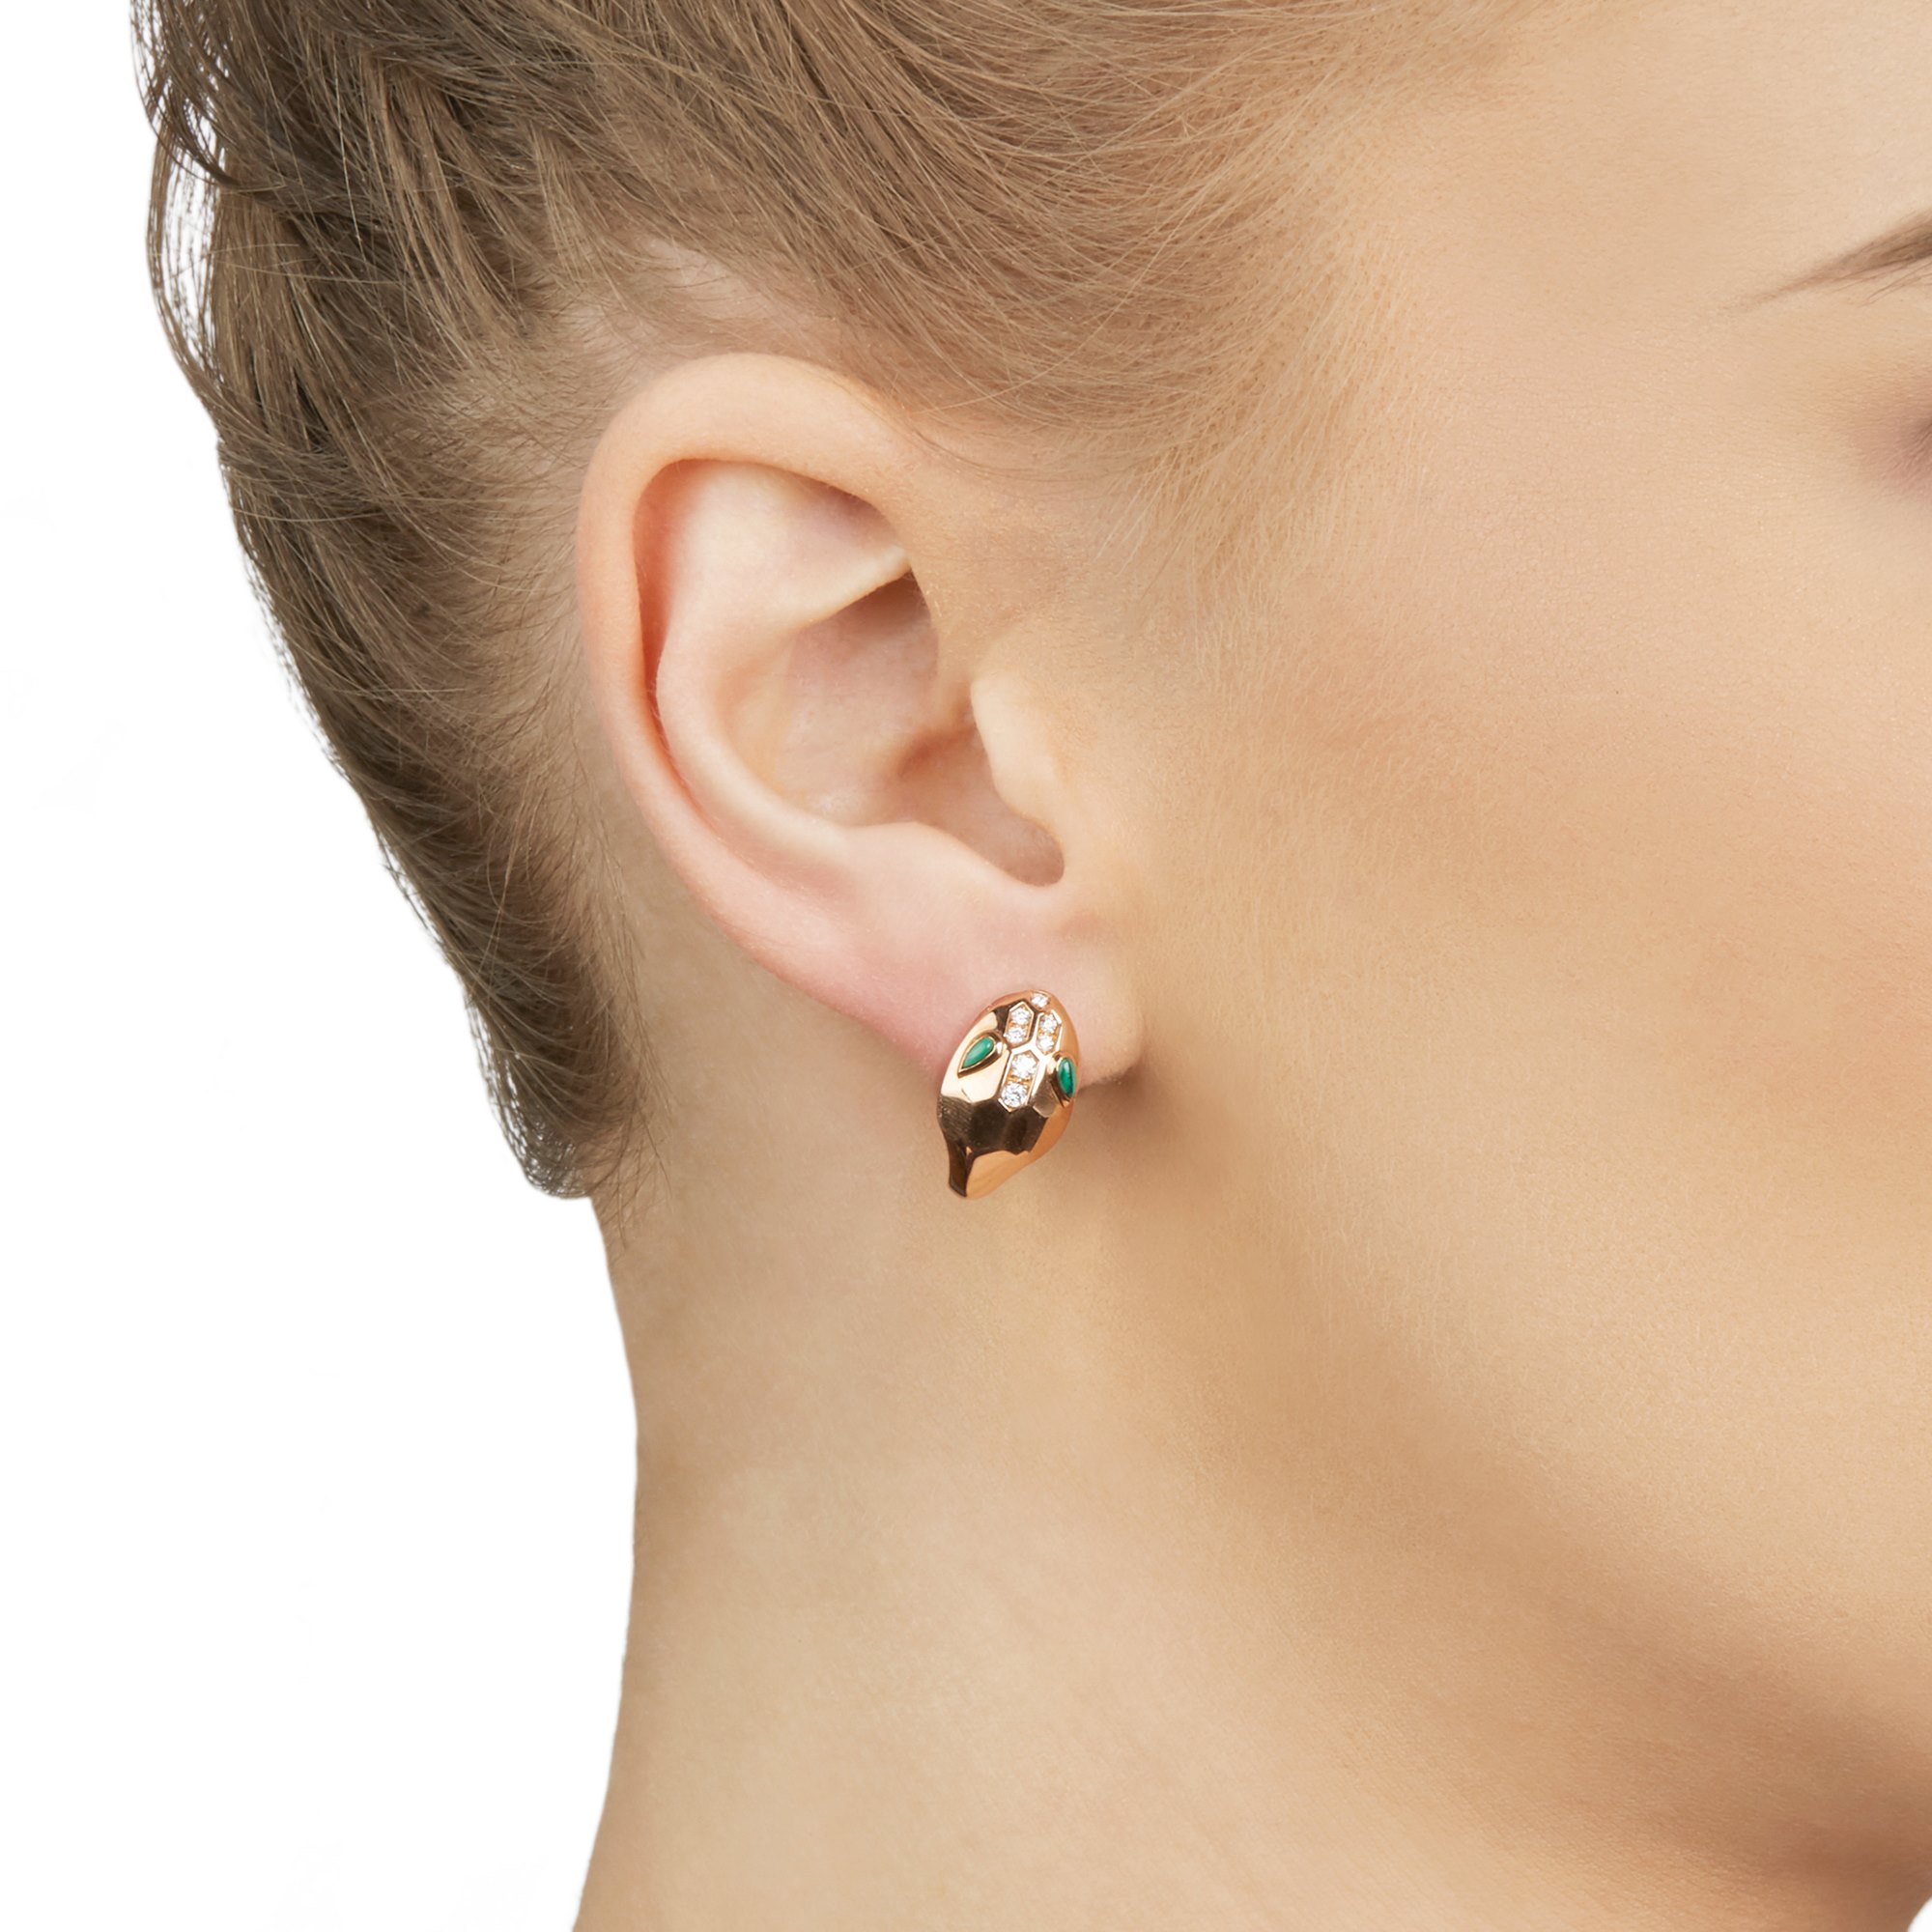 Bvlgari earrings